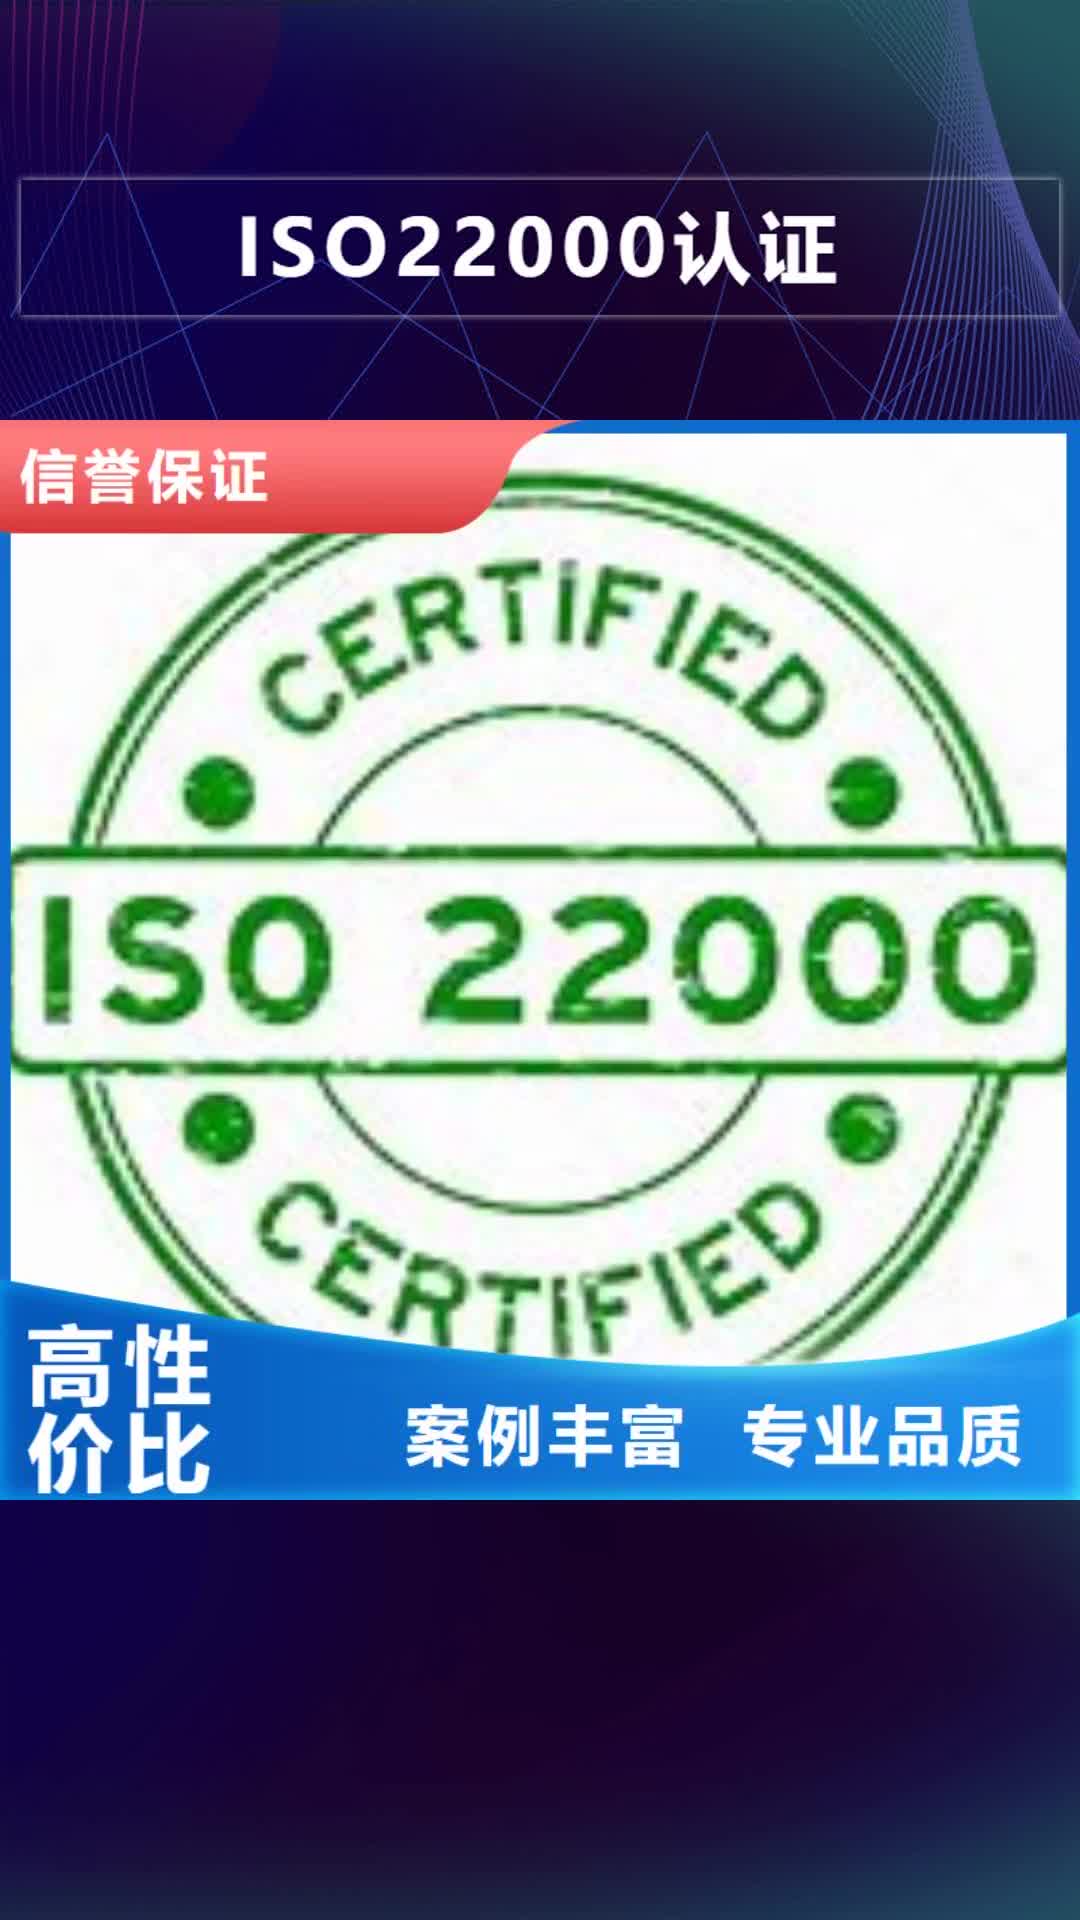 佳木斯【ISO22000认证】,FSC认证售后保障